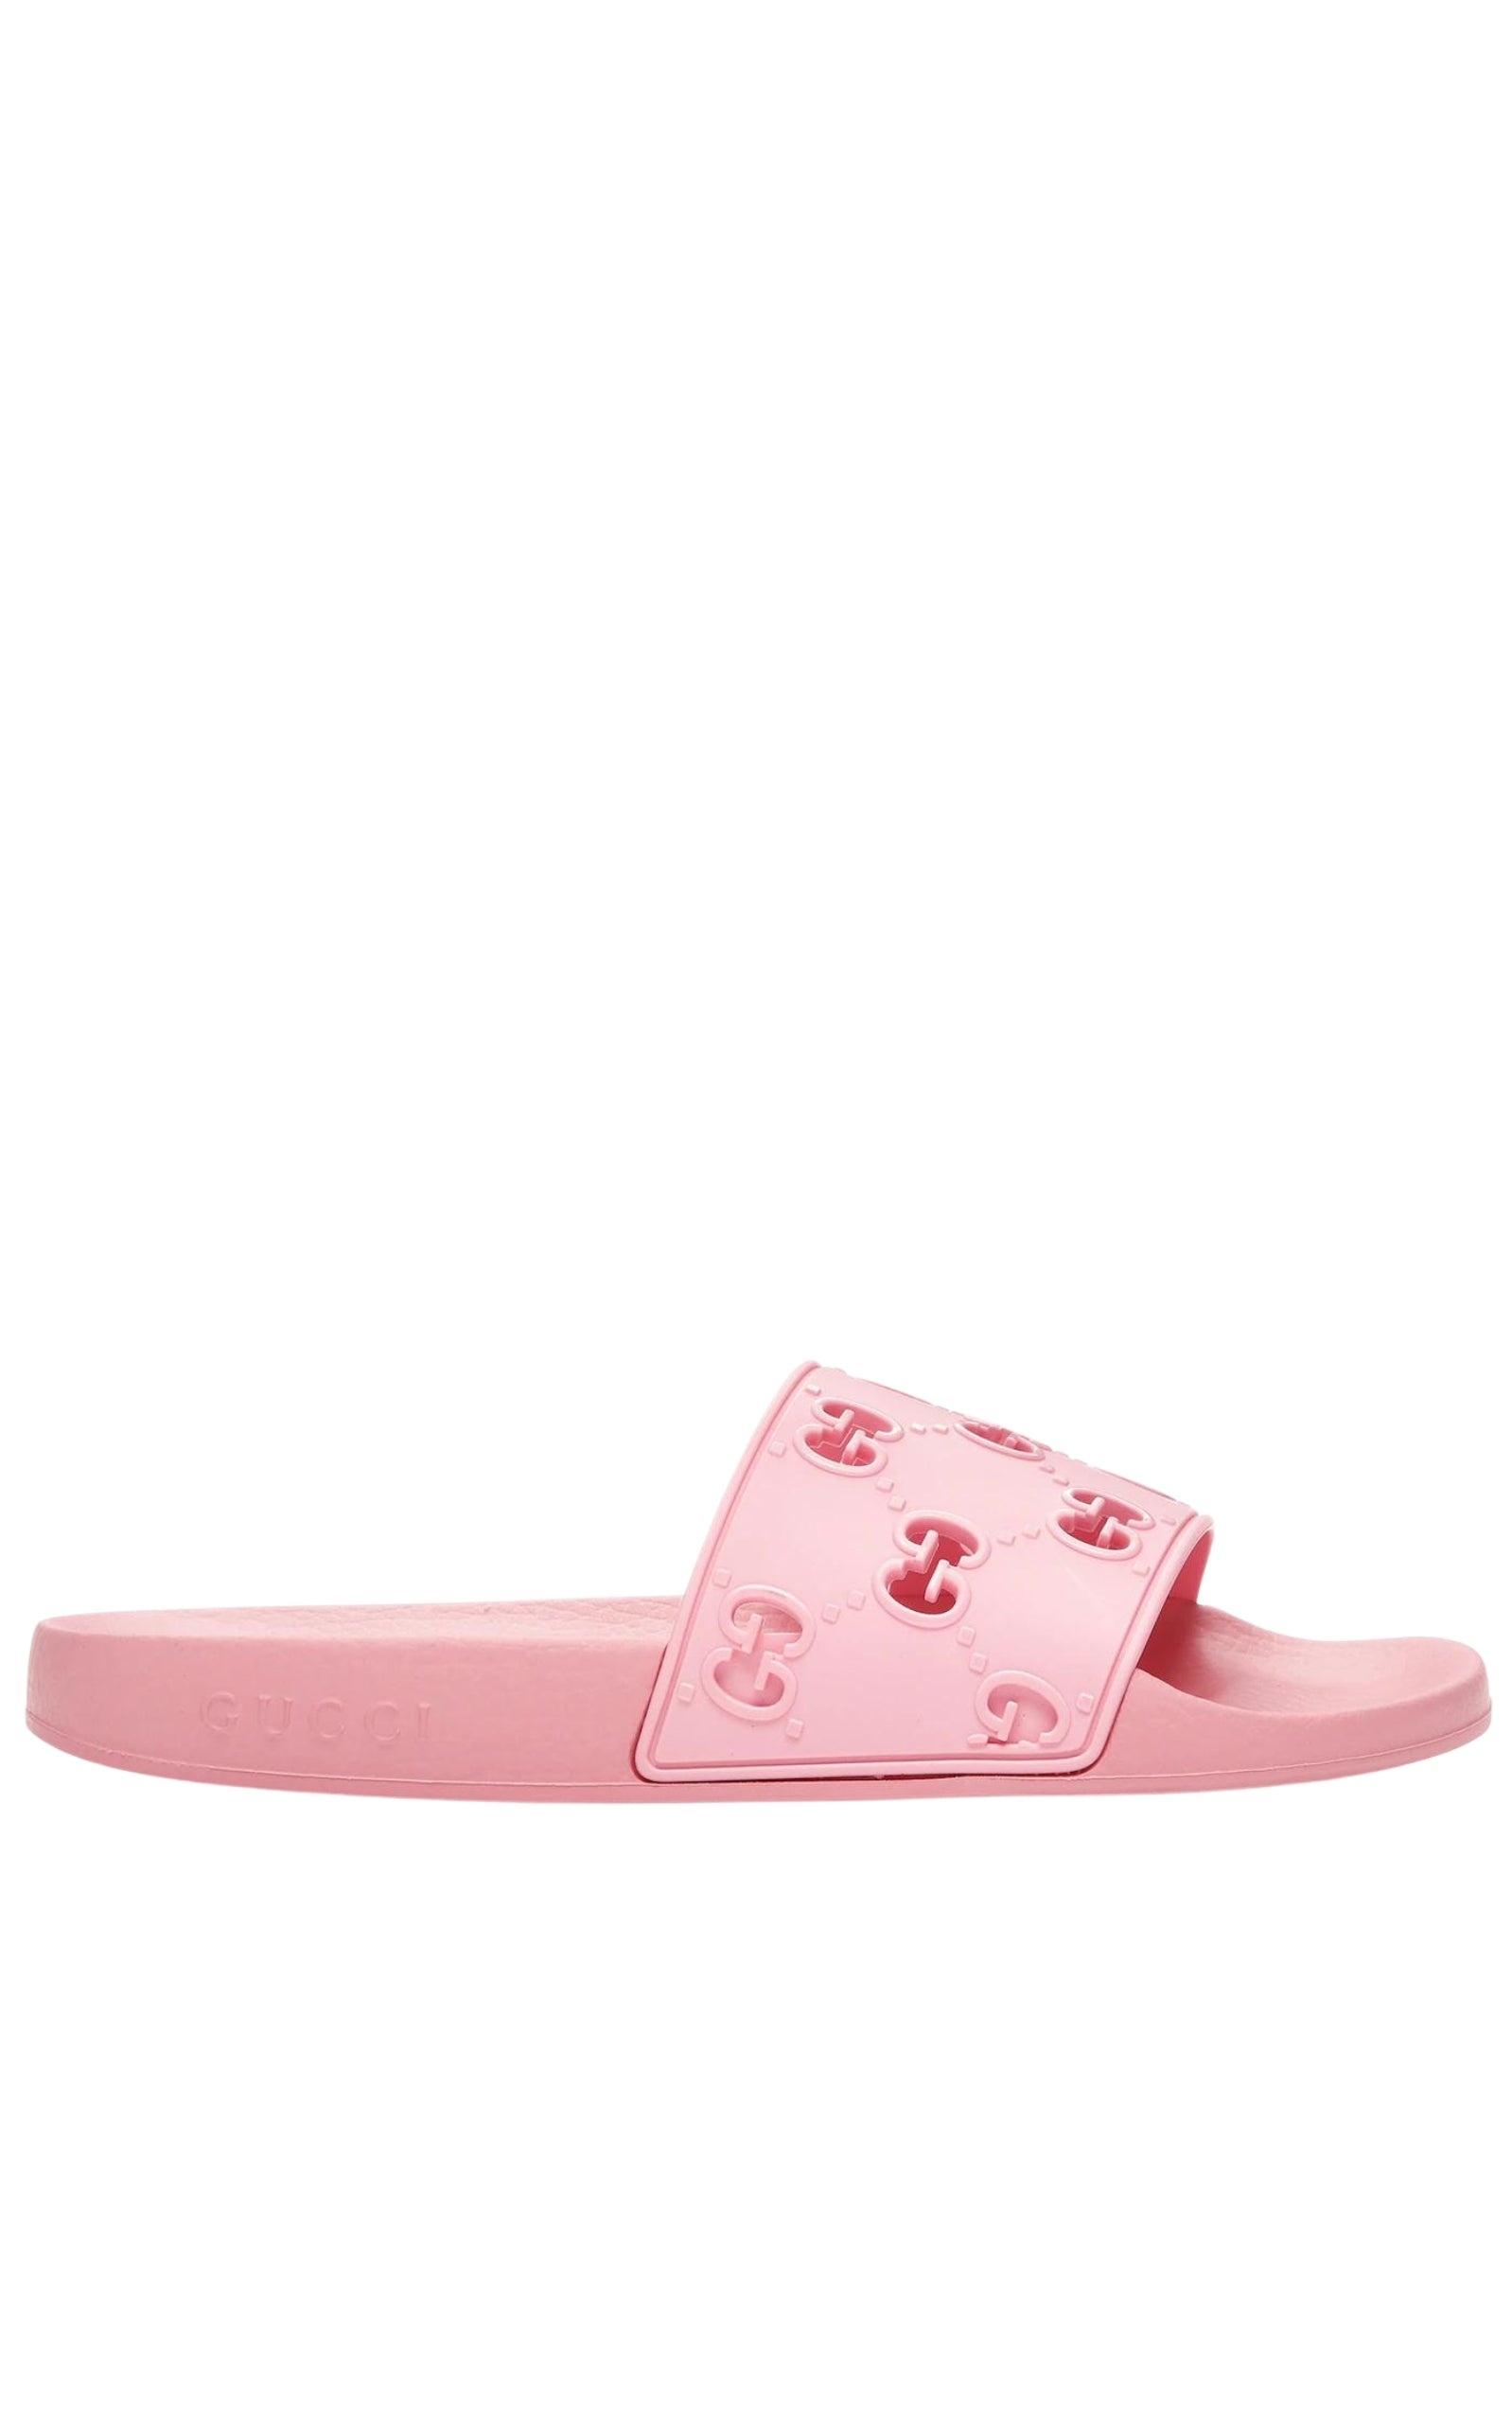 Rose GG Slide Sandal - 1